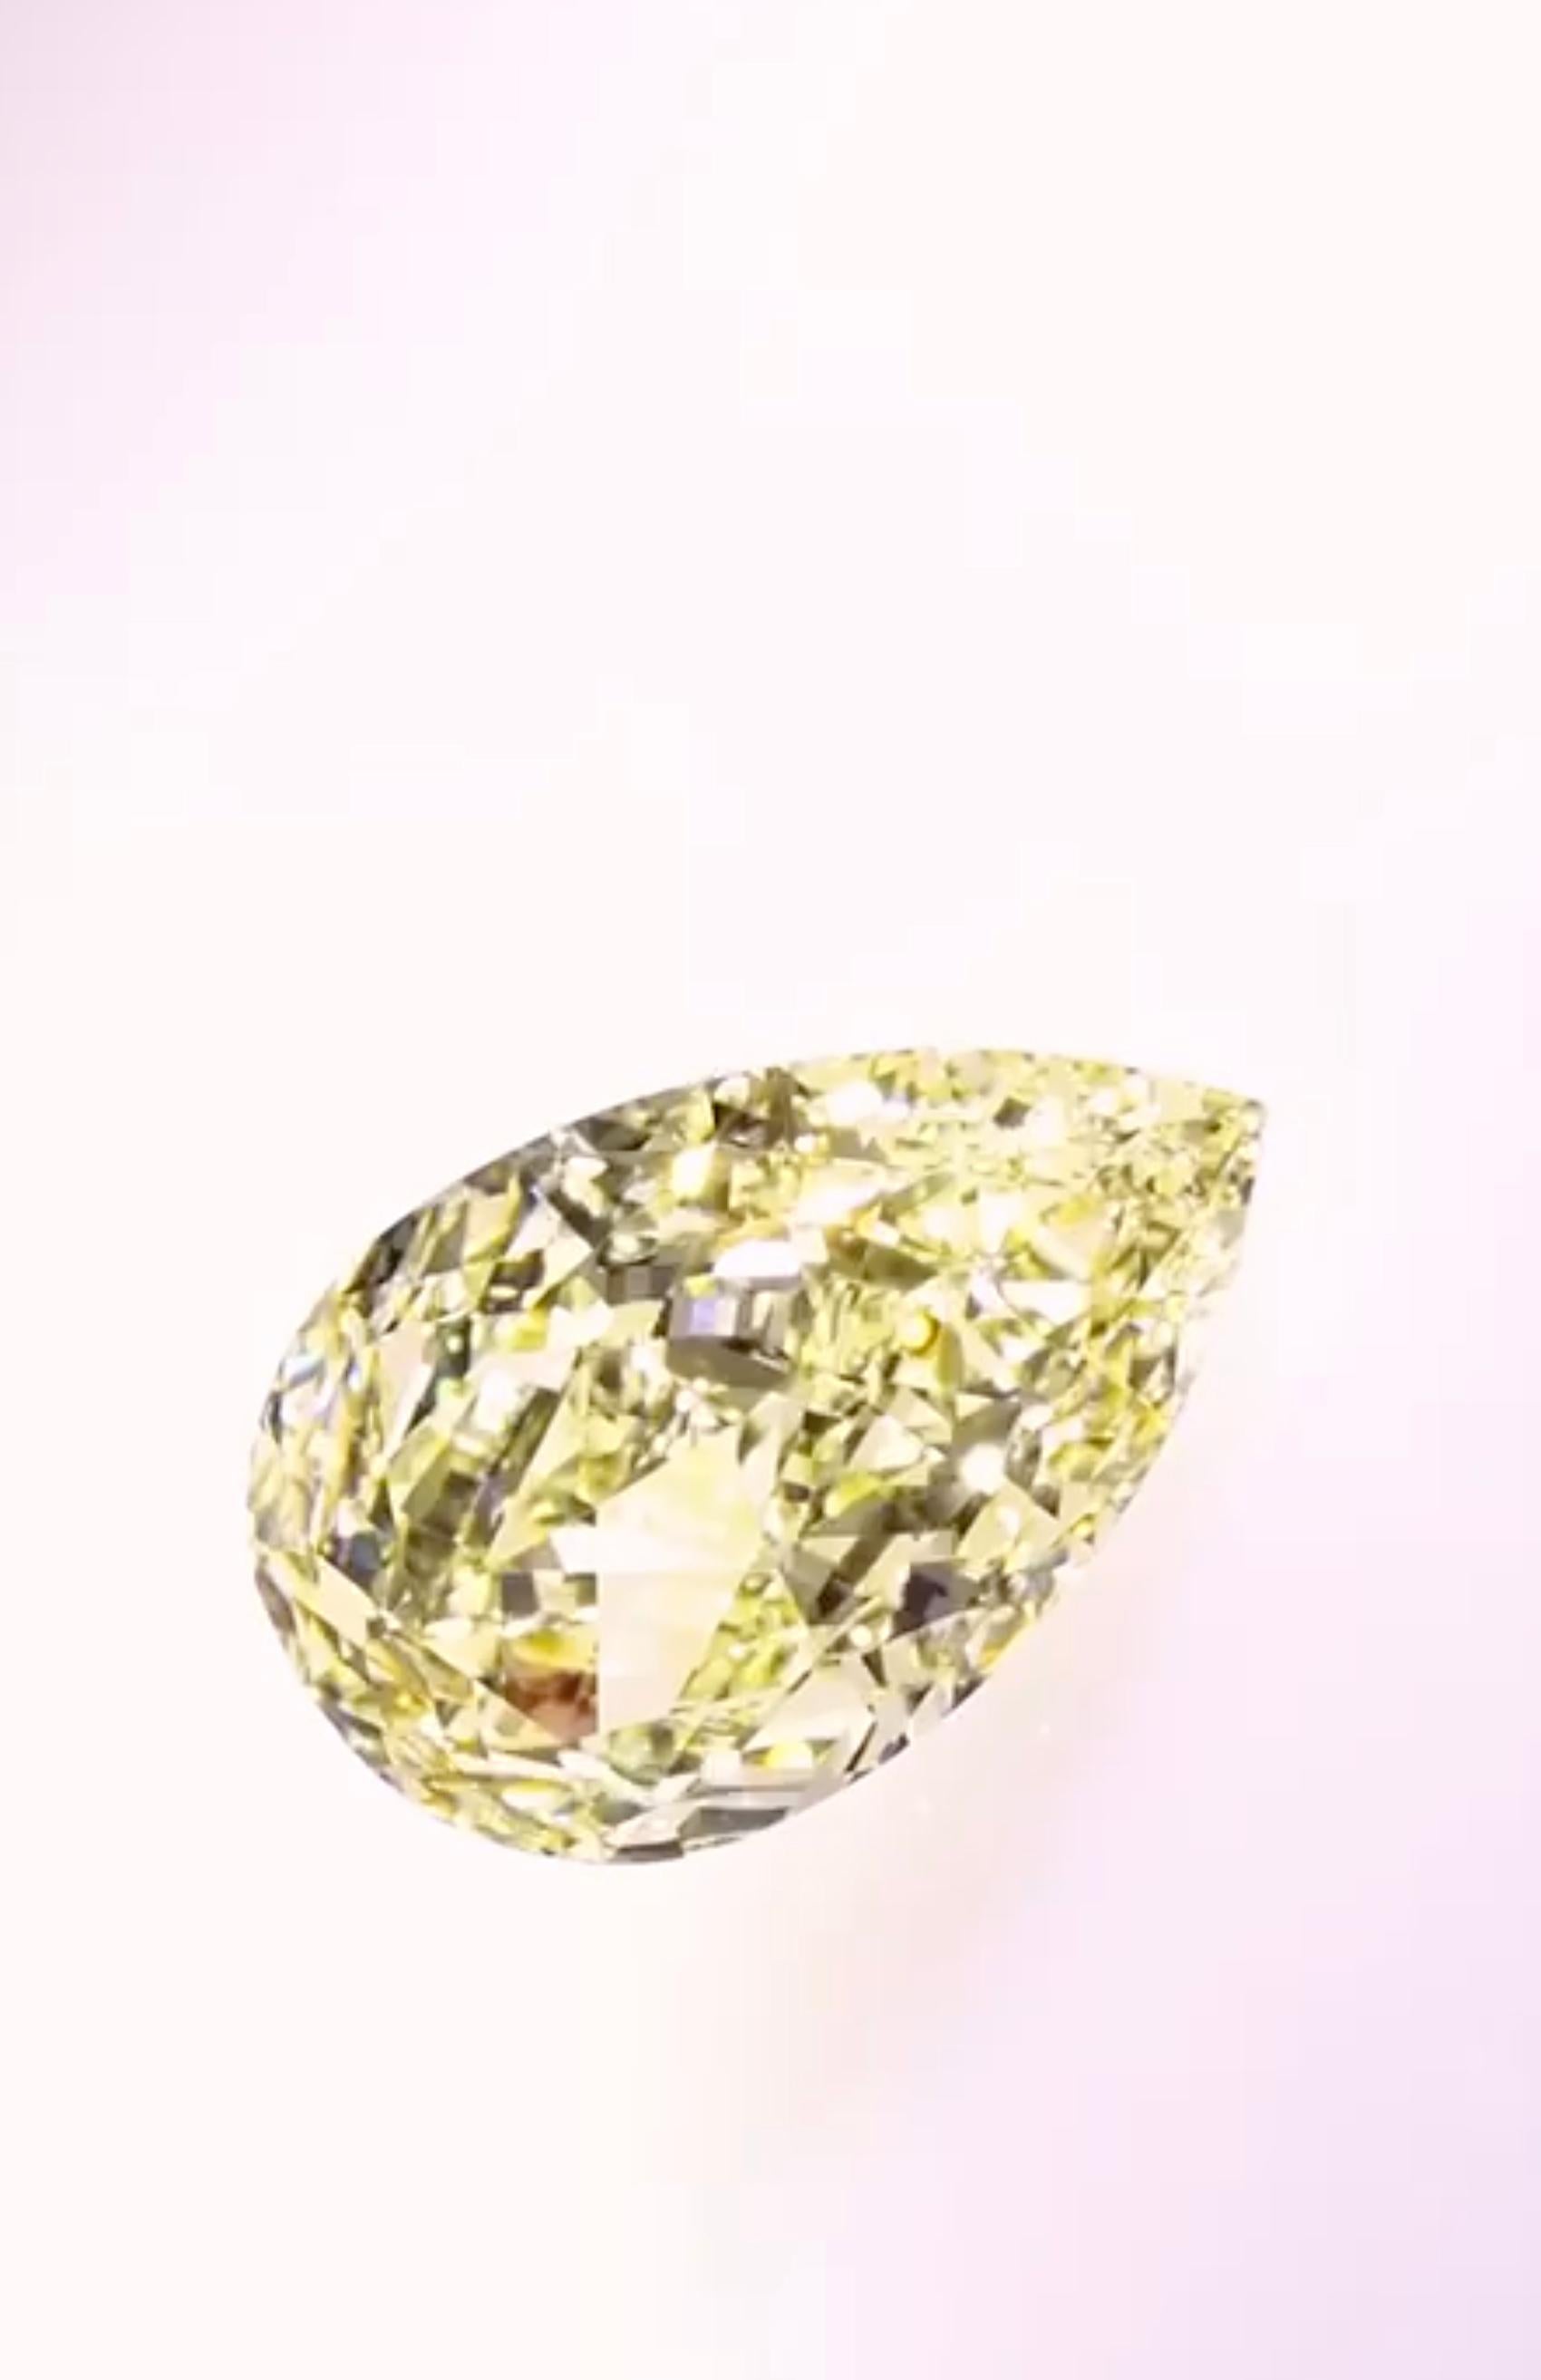 Pear Cut GIA Certified 15.63 Carat Fancy Yellow Diamond for Bespoke Jewel For Sale